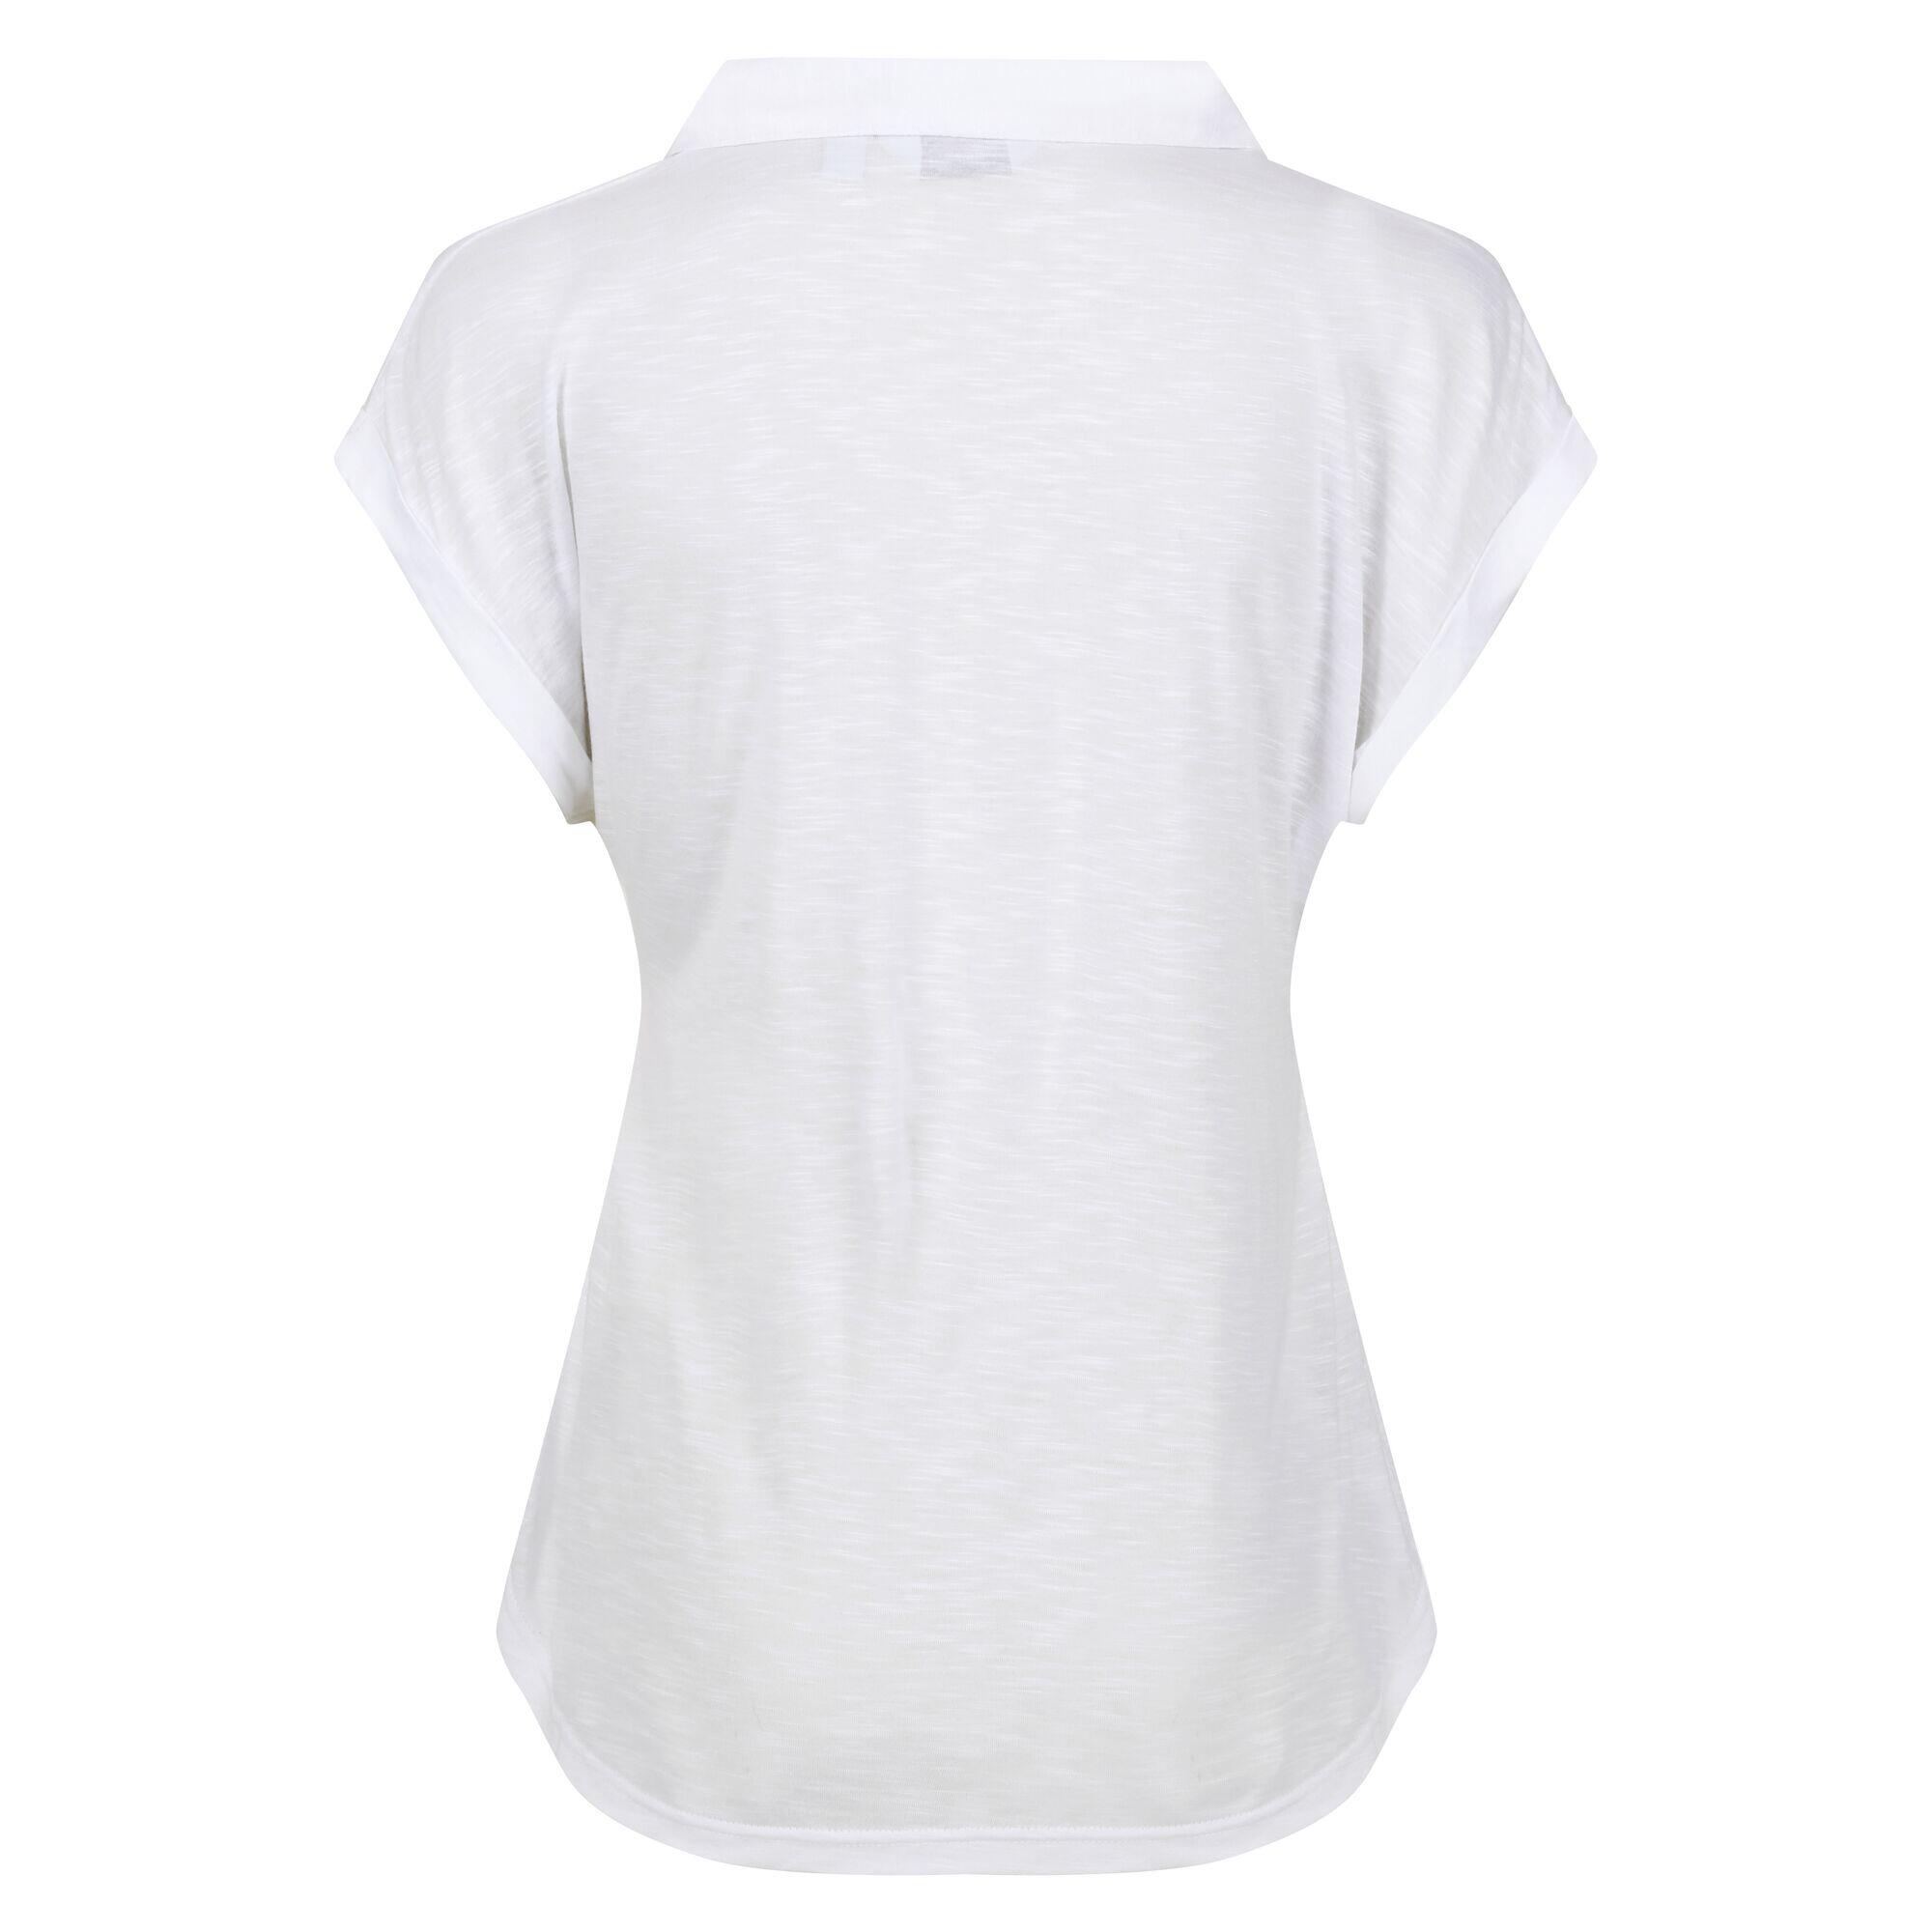 Womens/Ladies Lupine Collared TShirt (White) 2/5